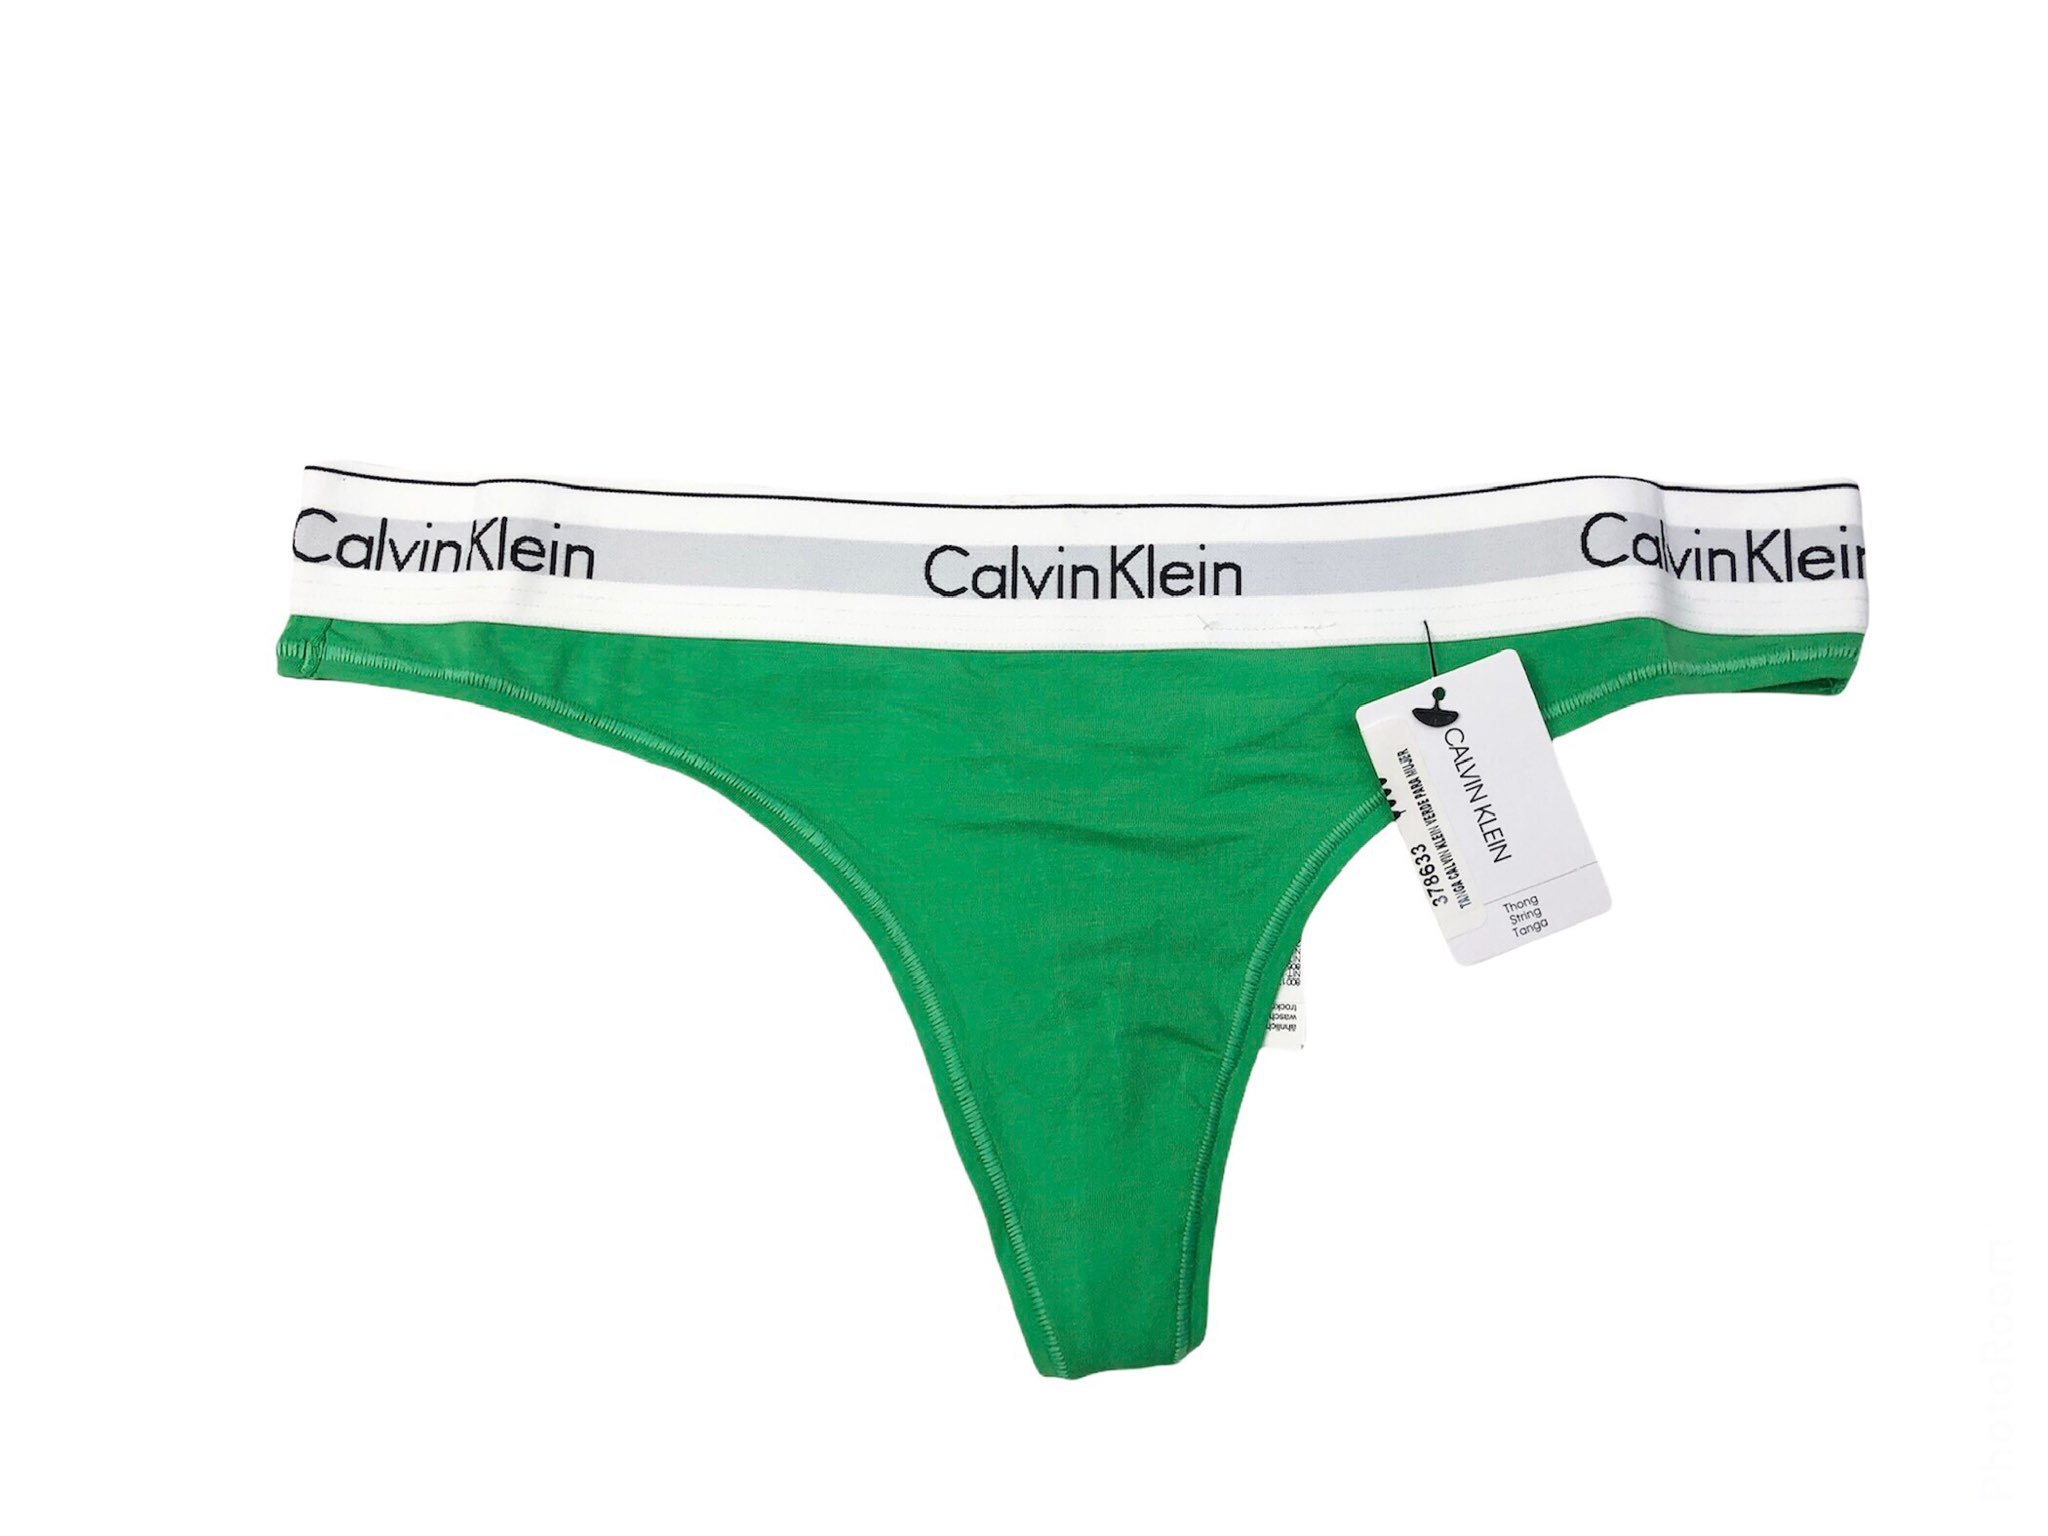 Tanga Calvin Klein color verde de dama 100% original y nuevo